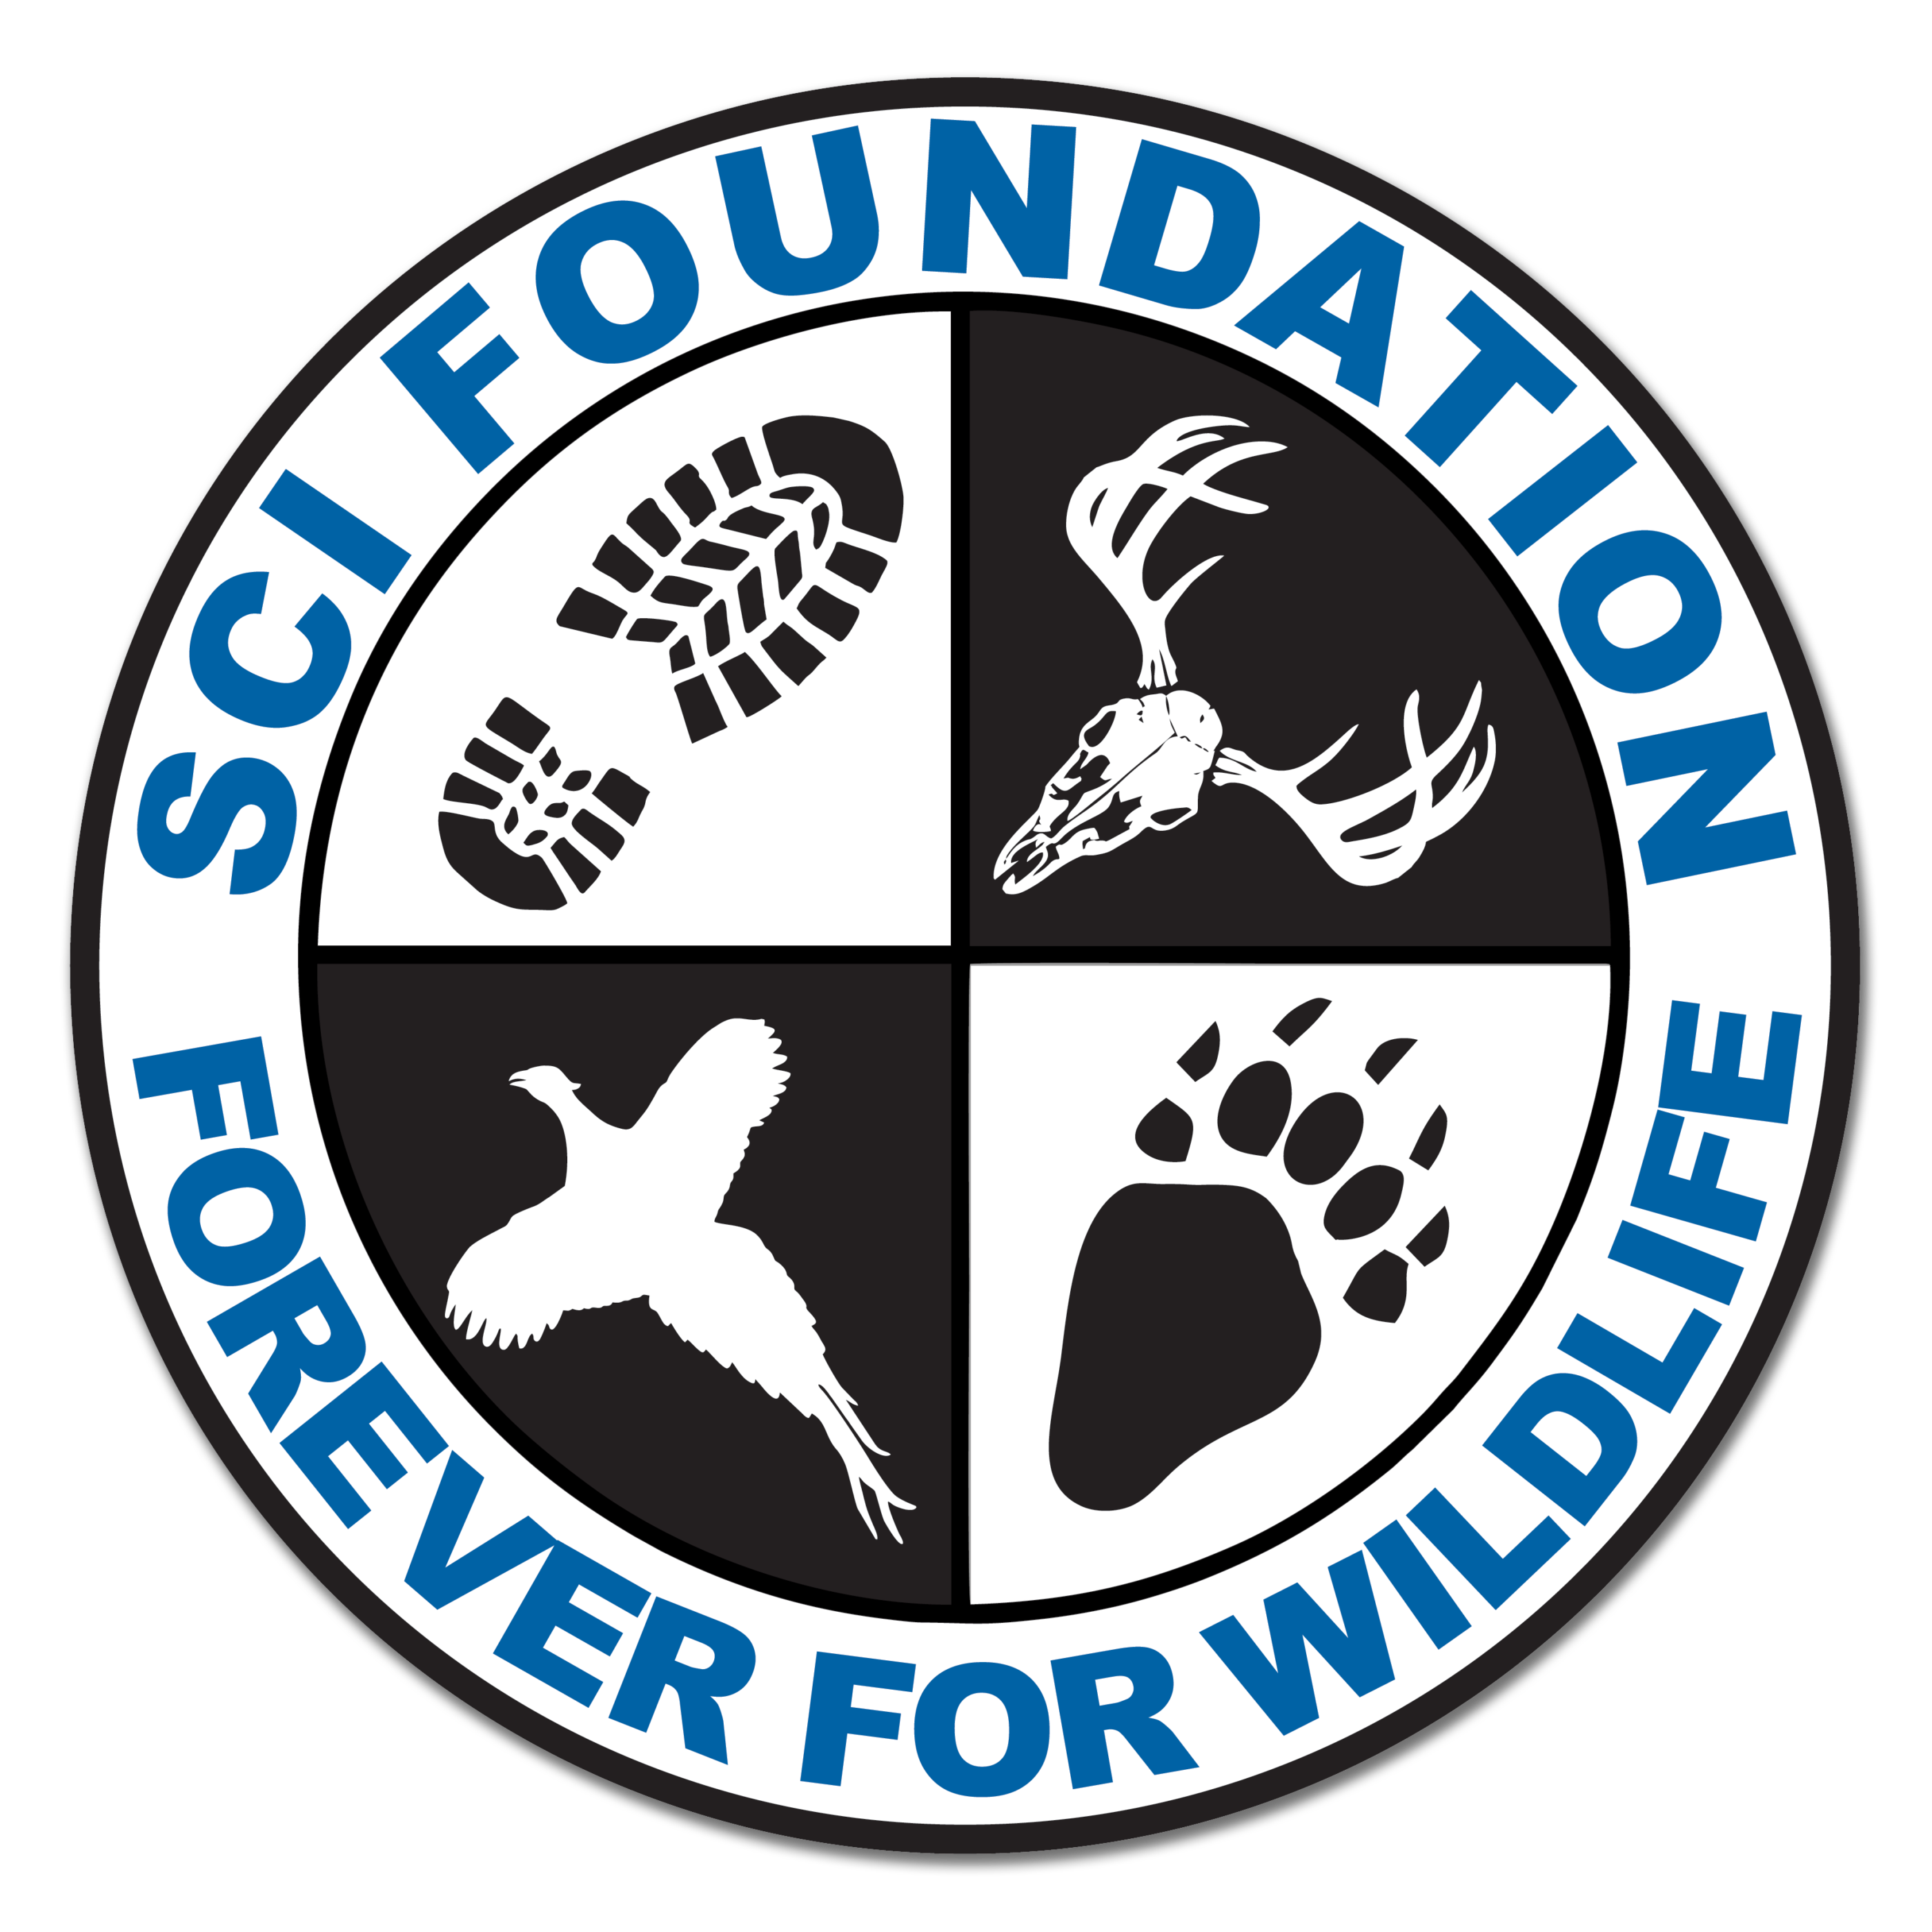 safari club international foundation